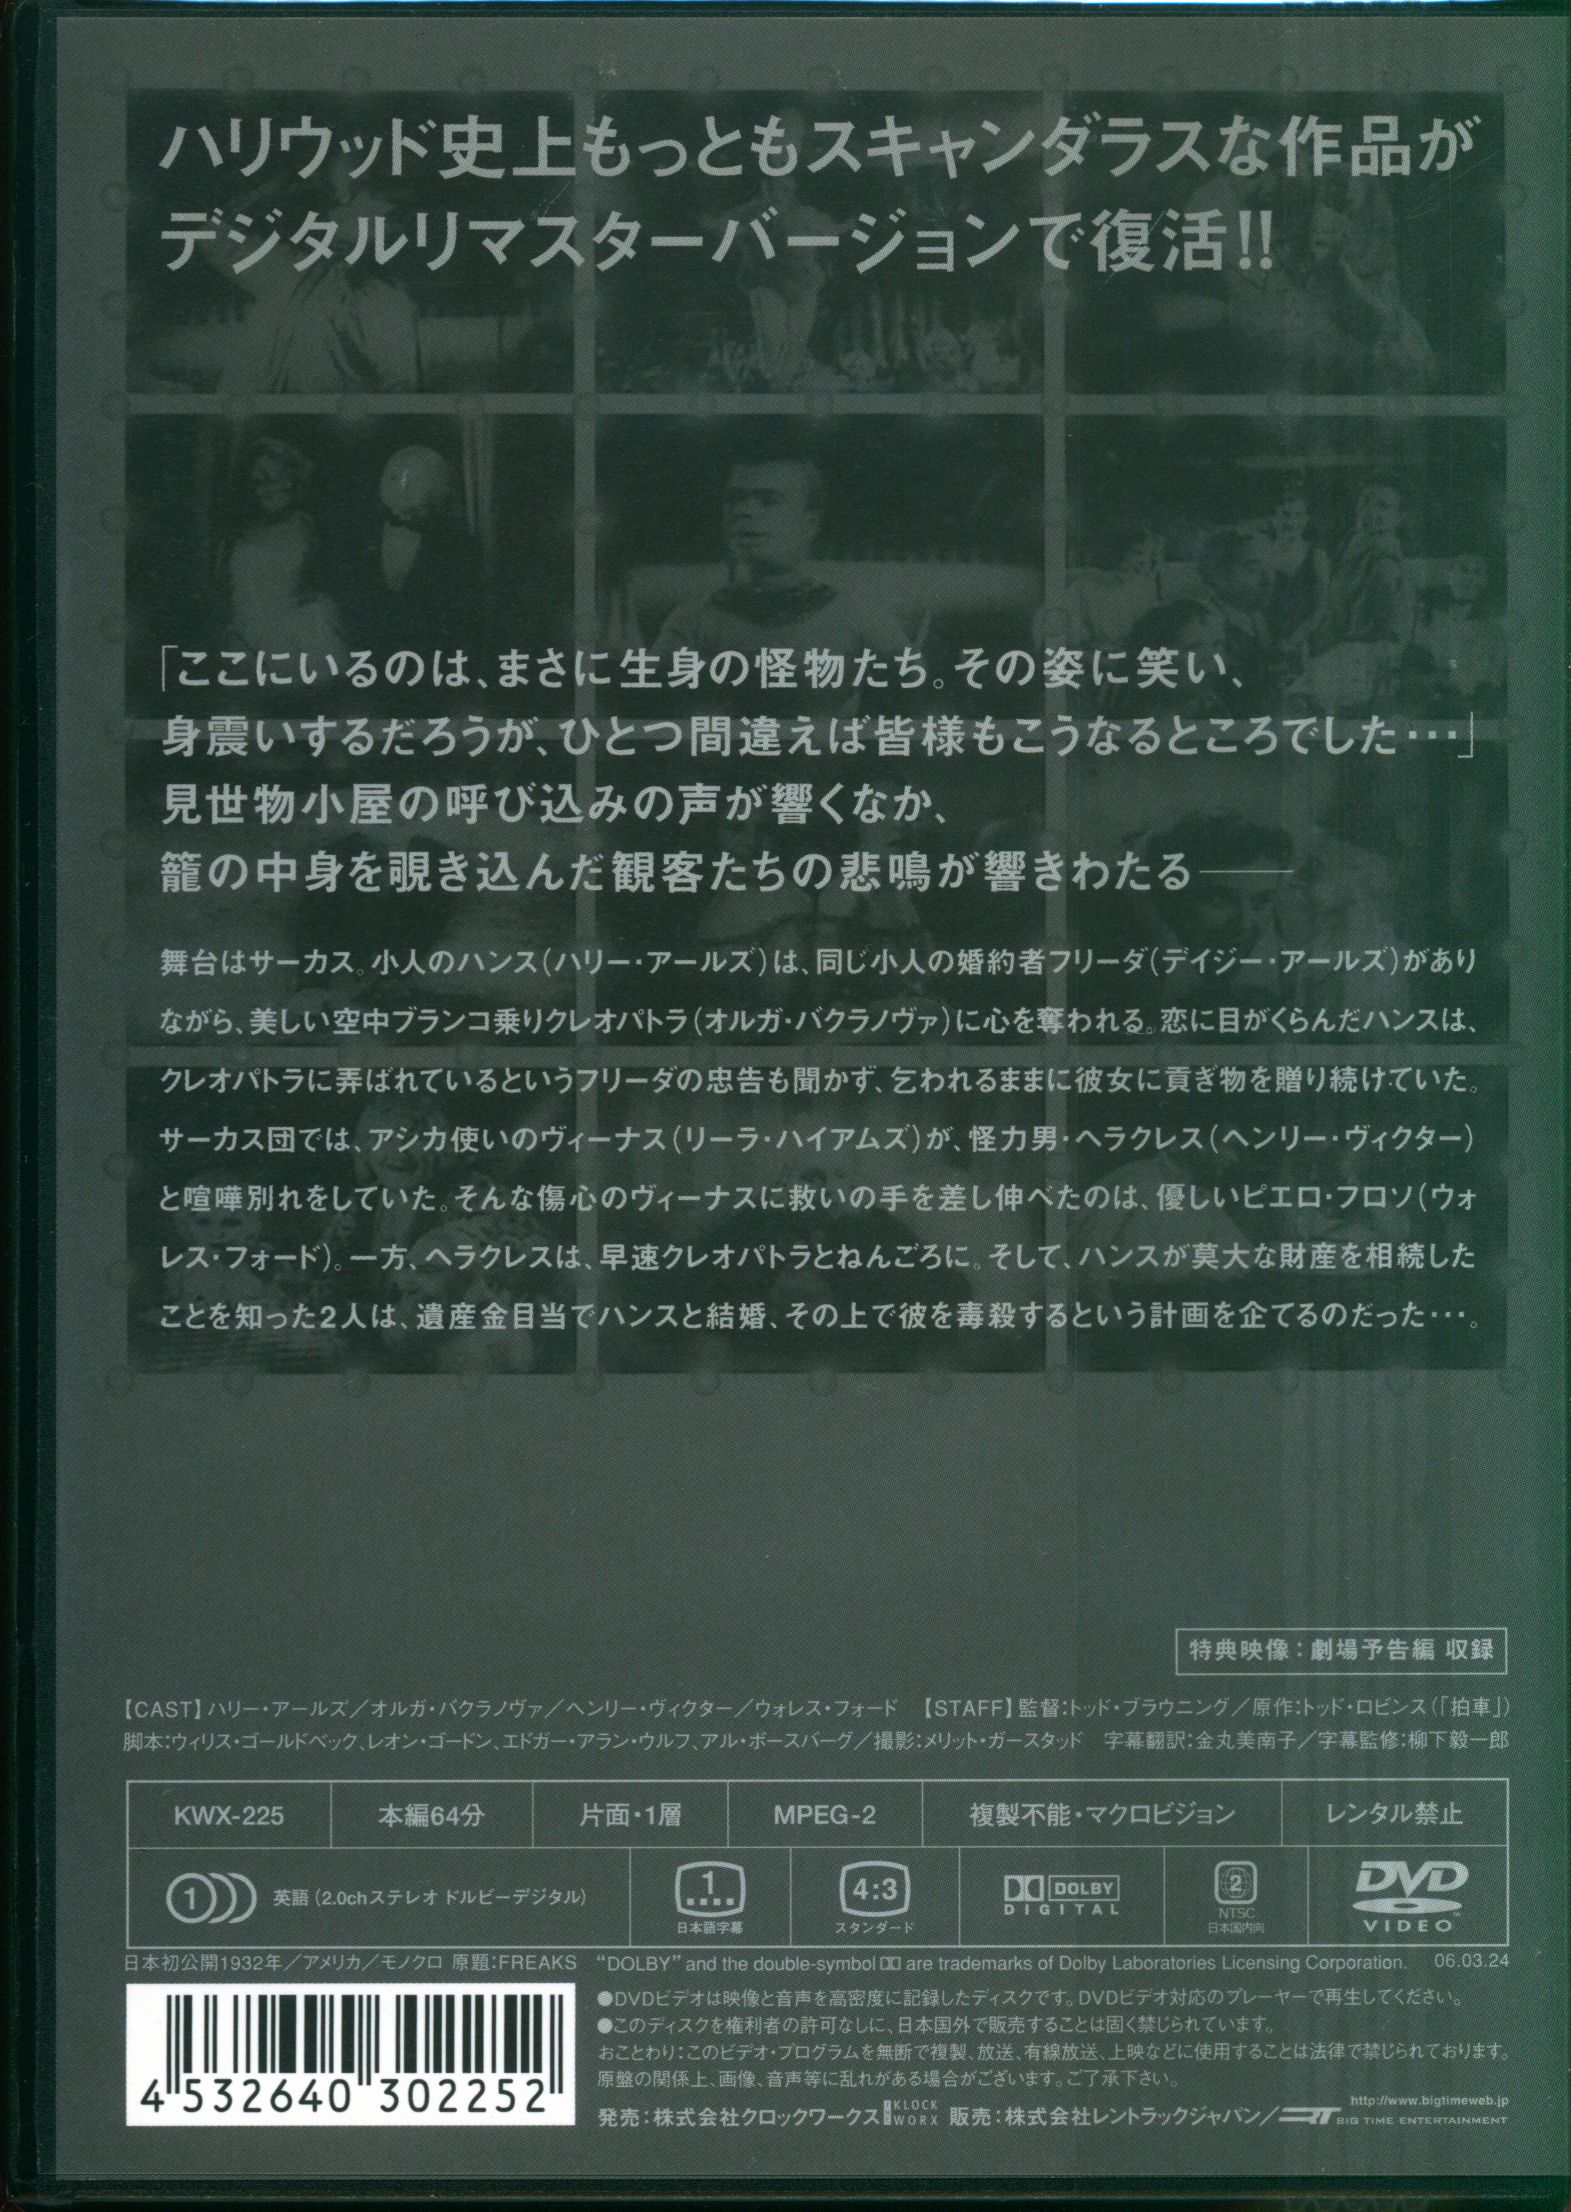 DVD フリークス 劇場公開版デジタルリマスターバージョン('32米)